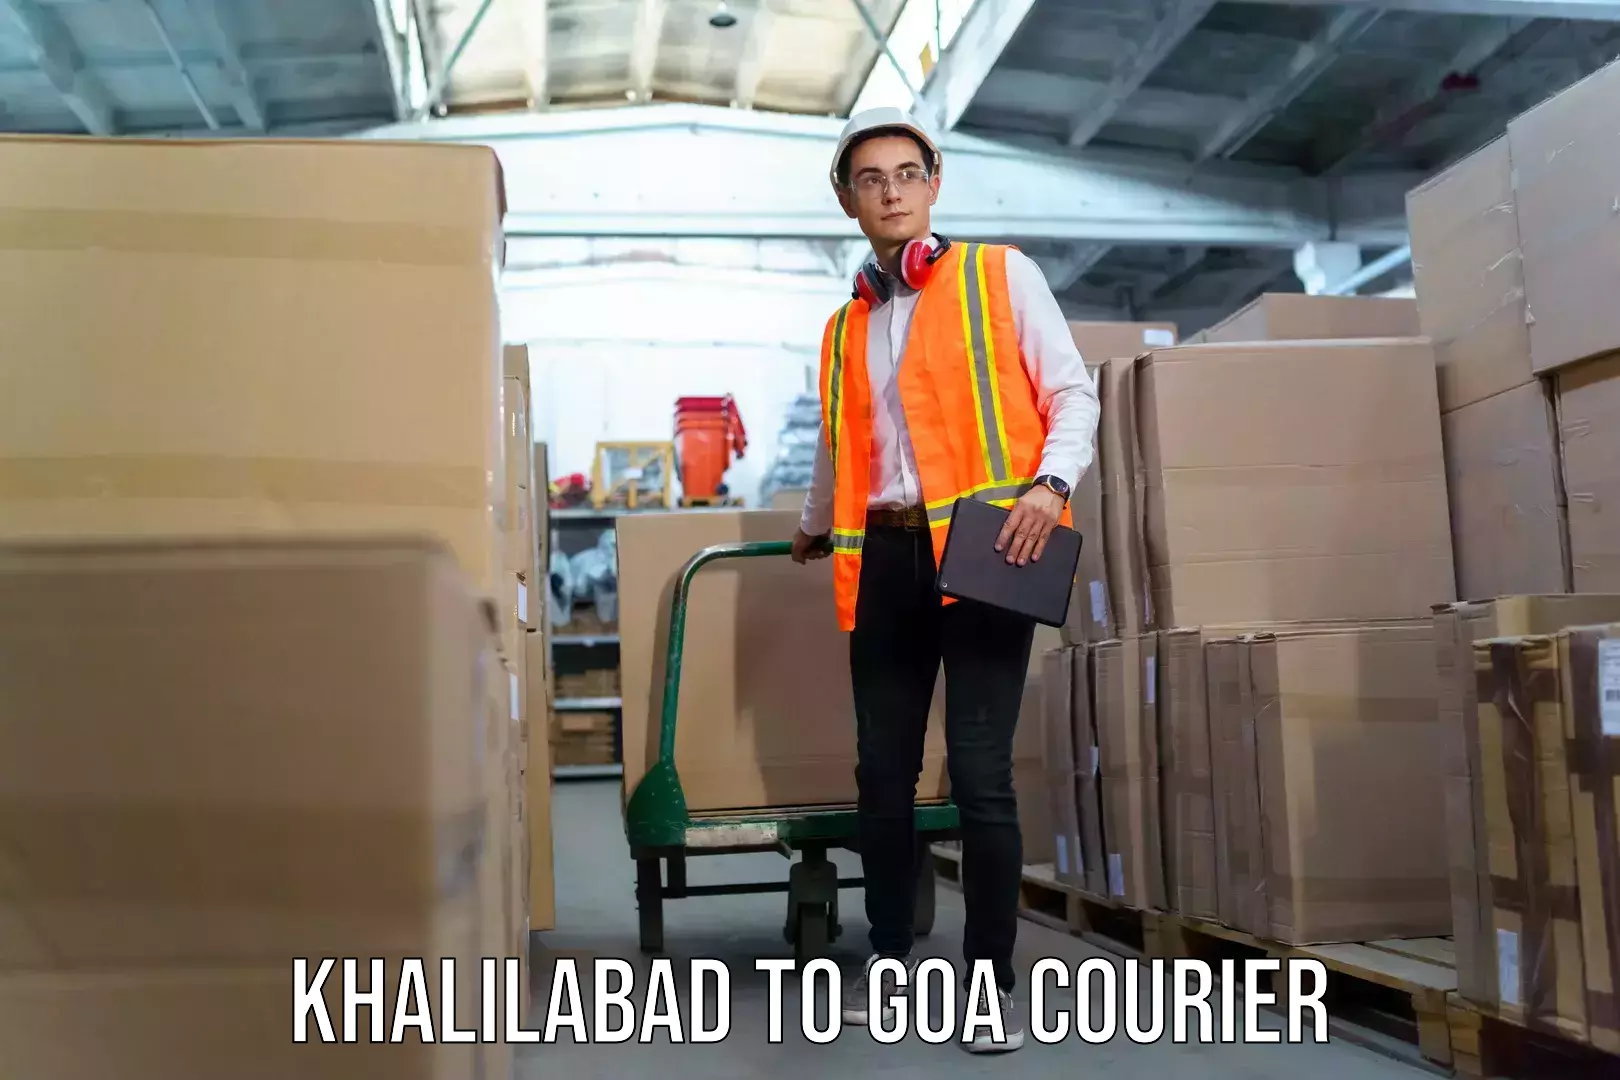 Baggage shipping service Khalilabad to Goa